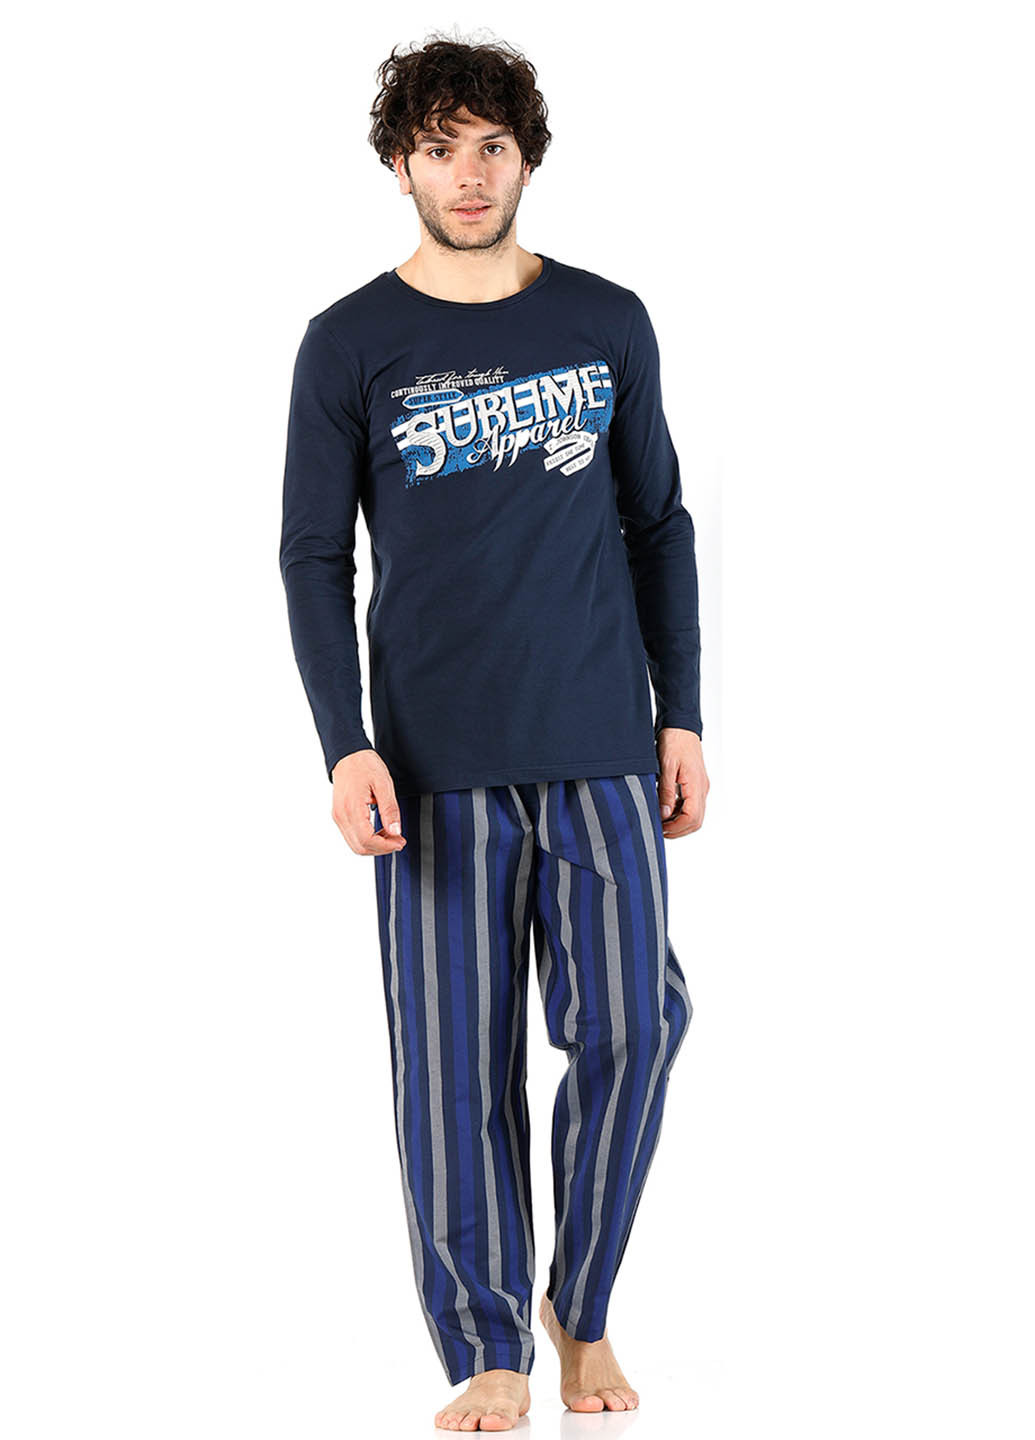 Пижама (лонгслив, брюки) DoReMi лонгслив + брюки полоска тёмно-синяя домашняя хлопок